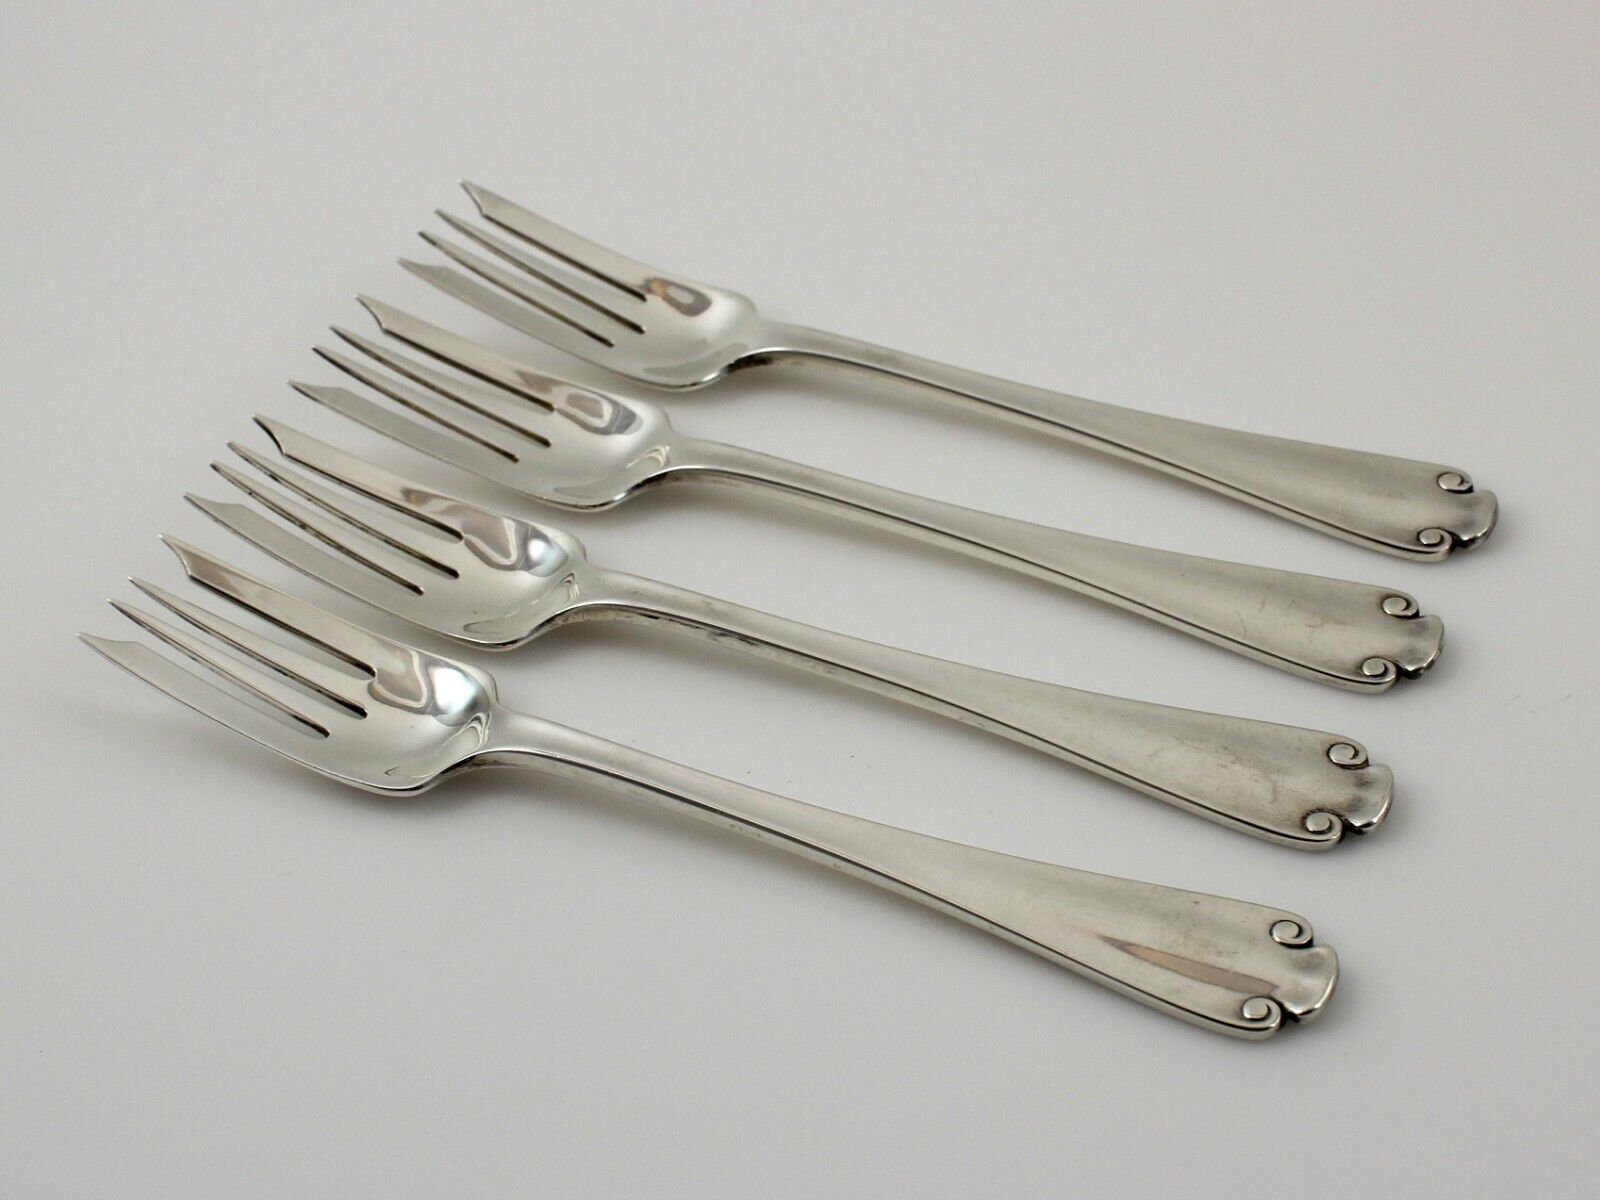 Tiffany Flemish Sterling Silver Salad Forks - 6 3/4" - Set of 4 - No Monogram